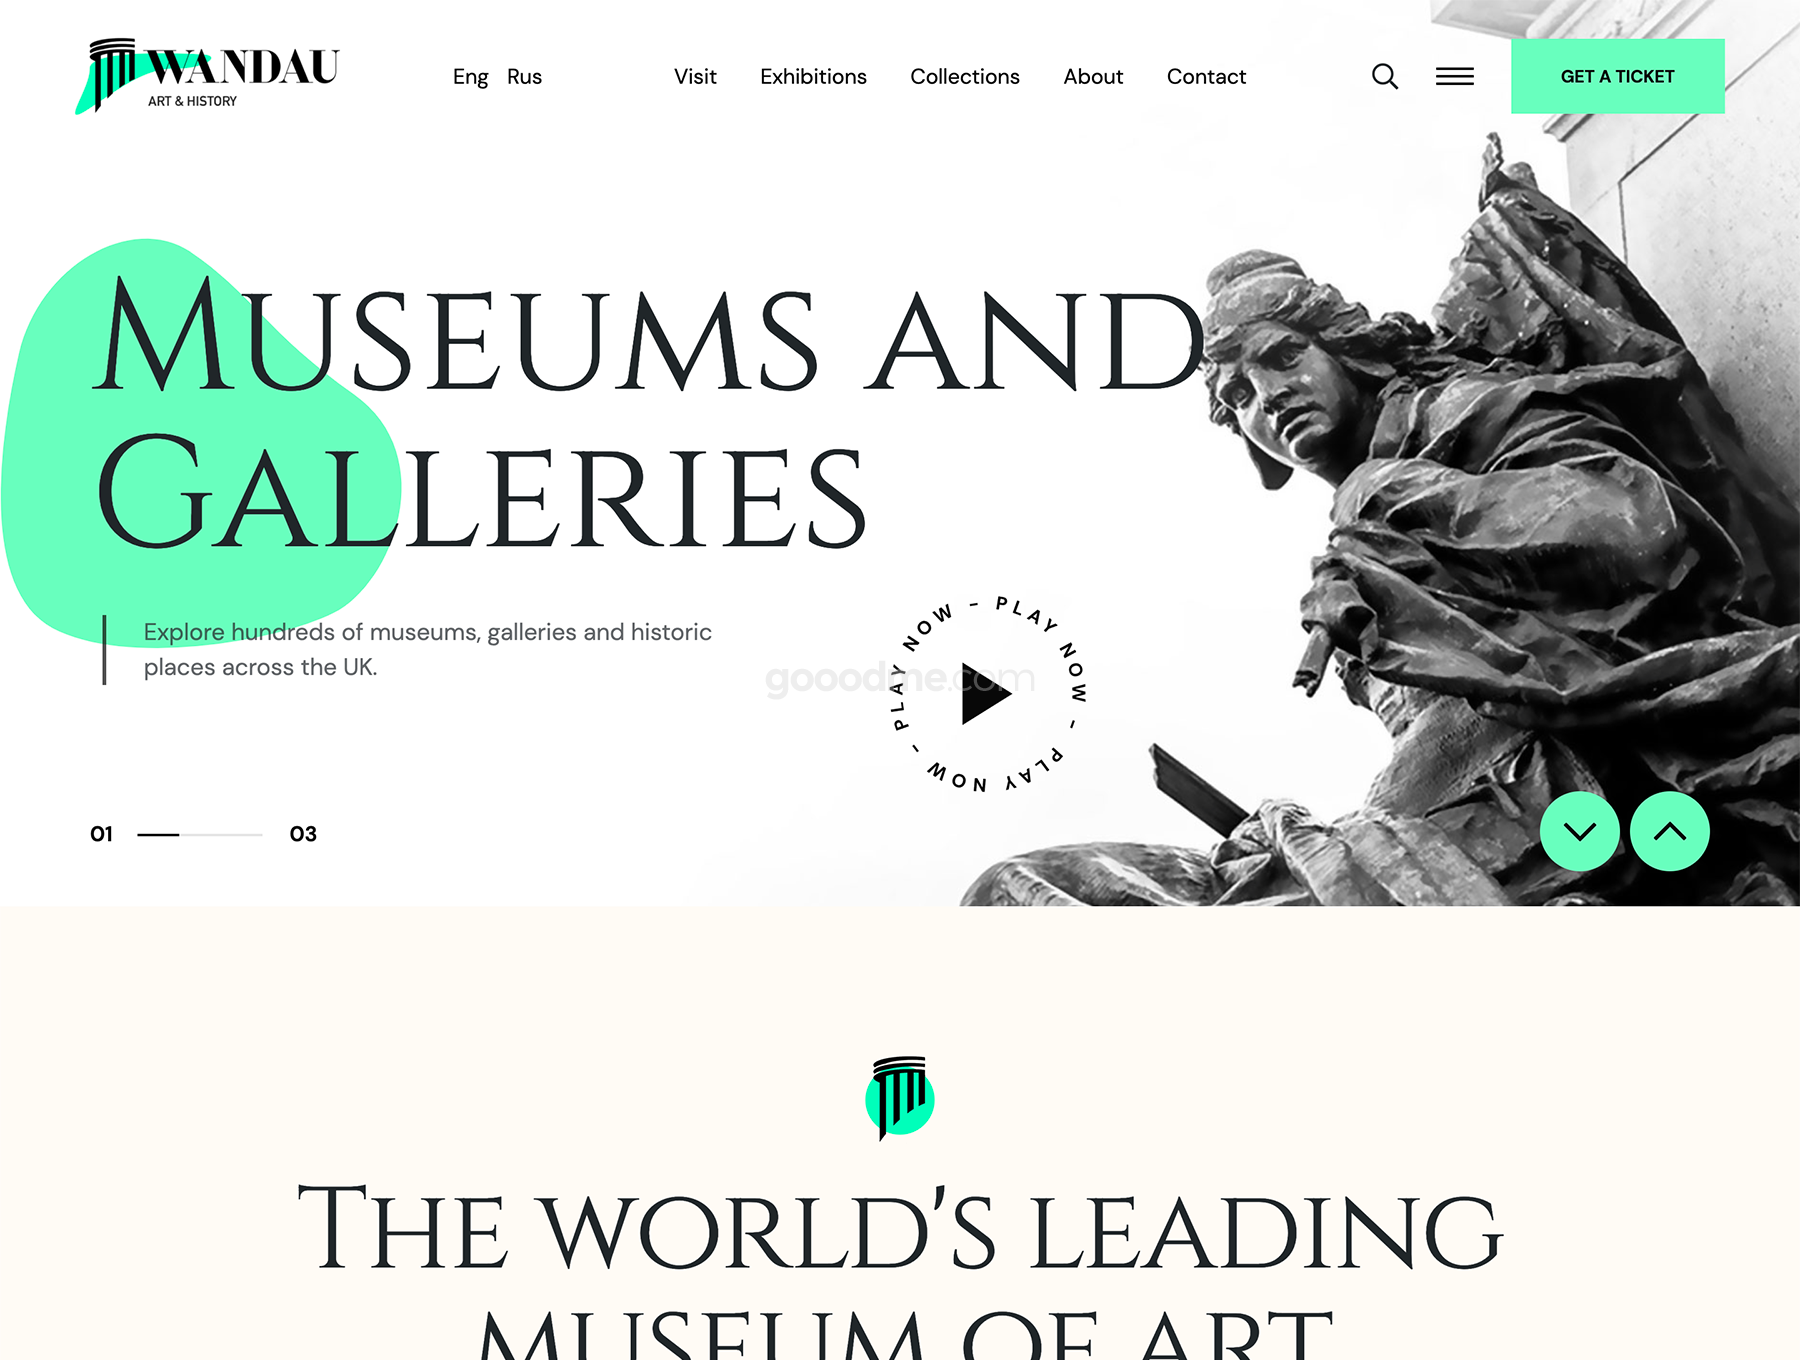 艺术美术馆个人作品集展示web网页界面设计模版Wandau Art & History Museum HTML Template